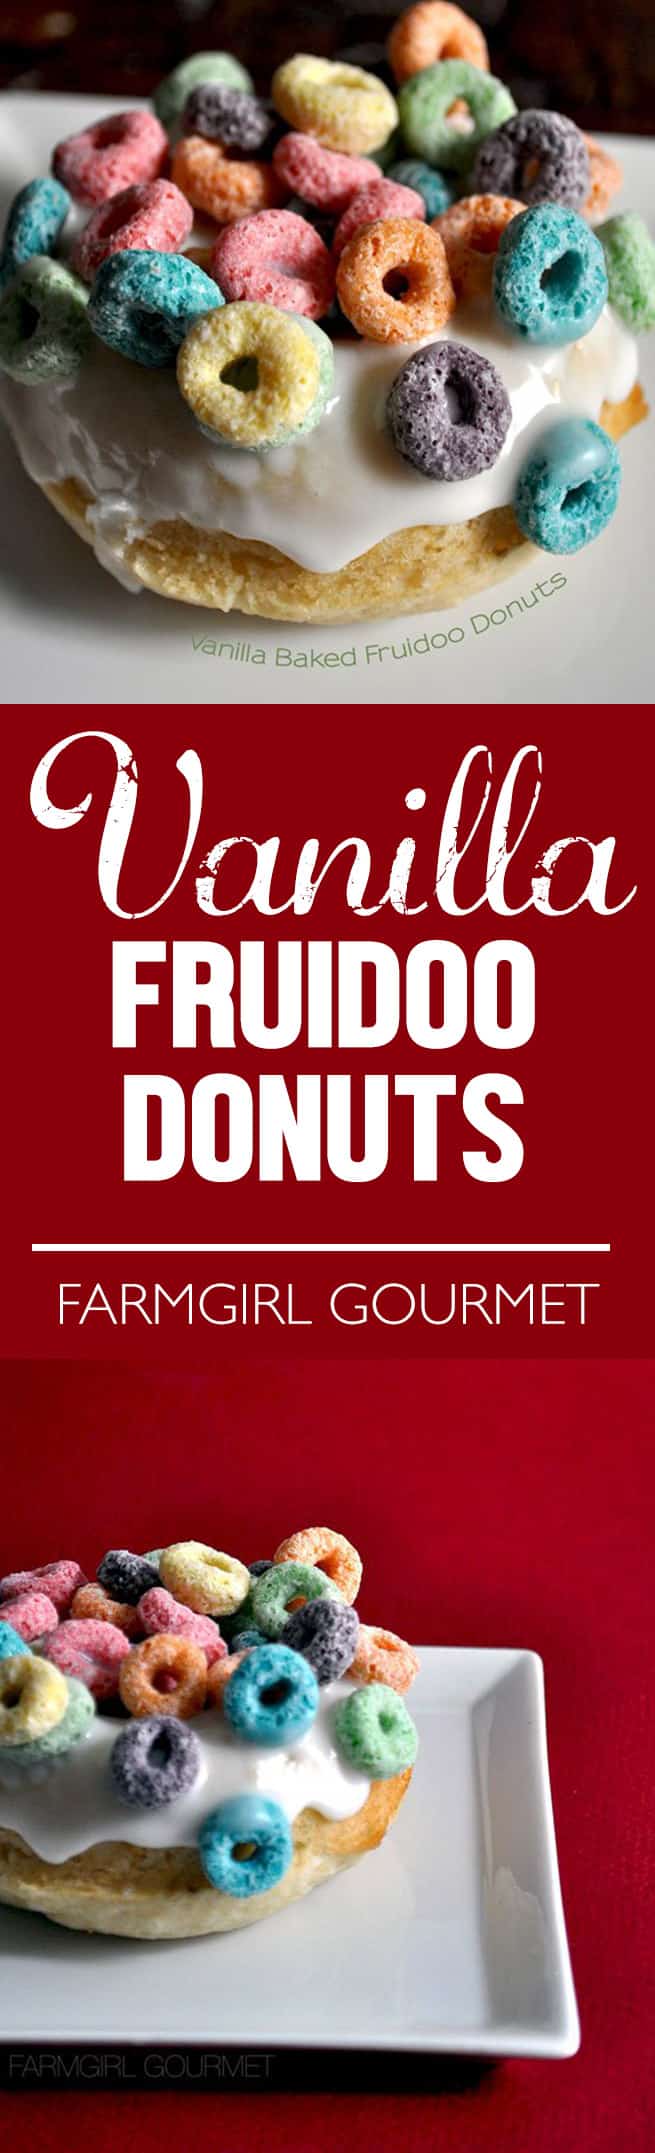 Vanilla Baked Fruidoo Donuts recipe | farmgirlgourmet.com